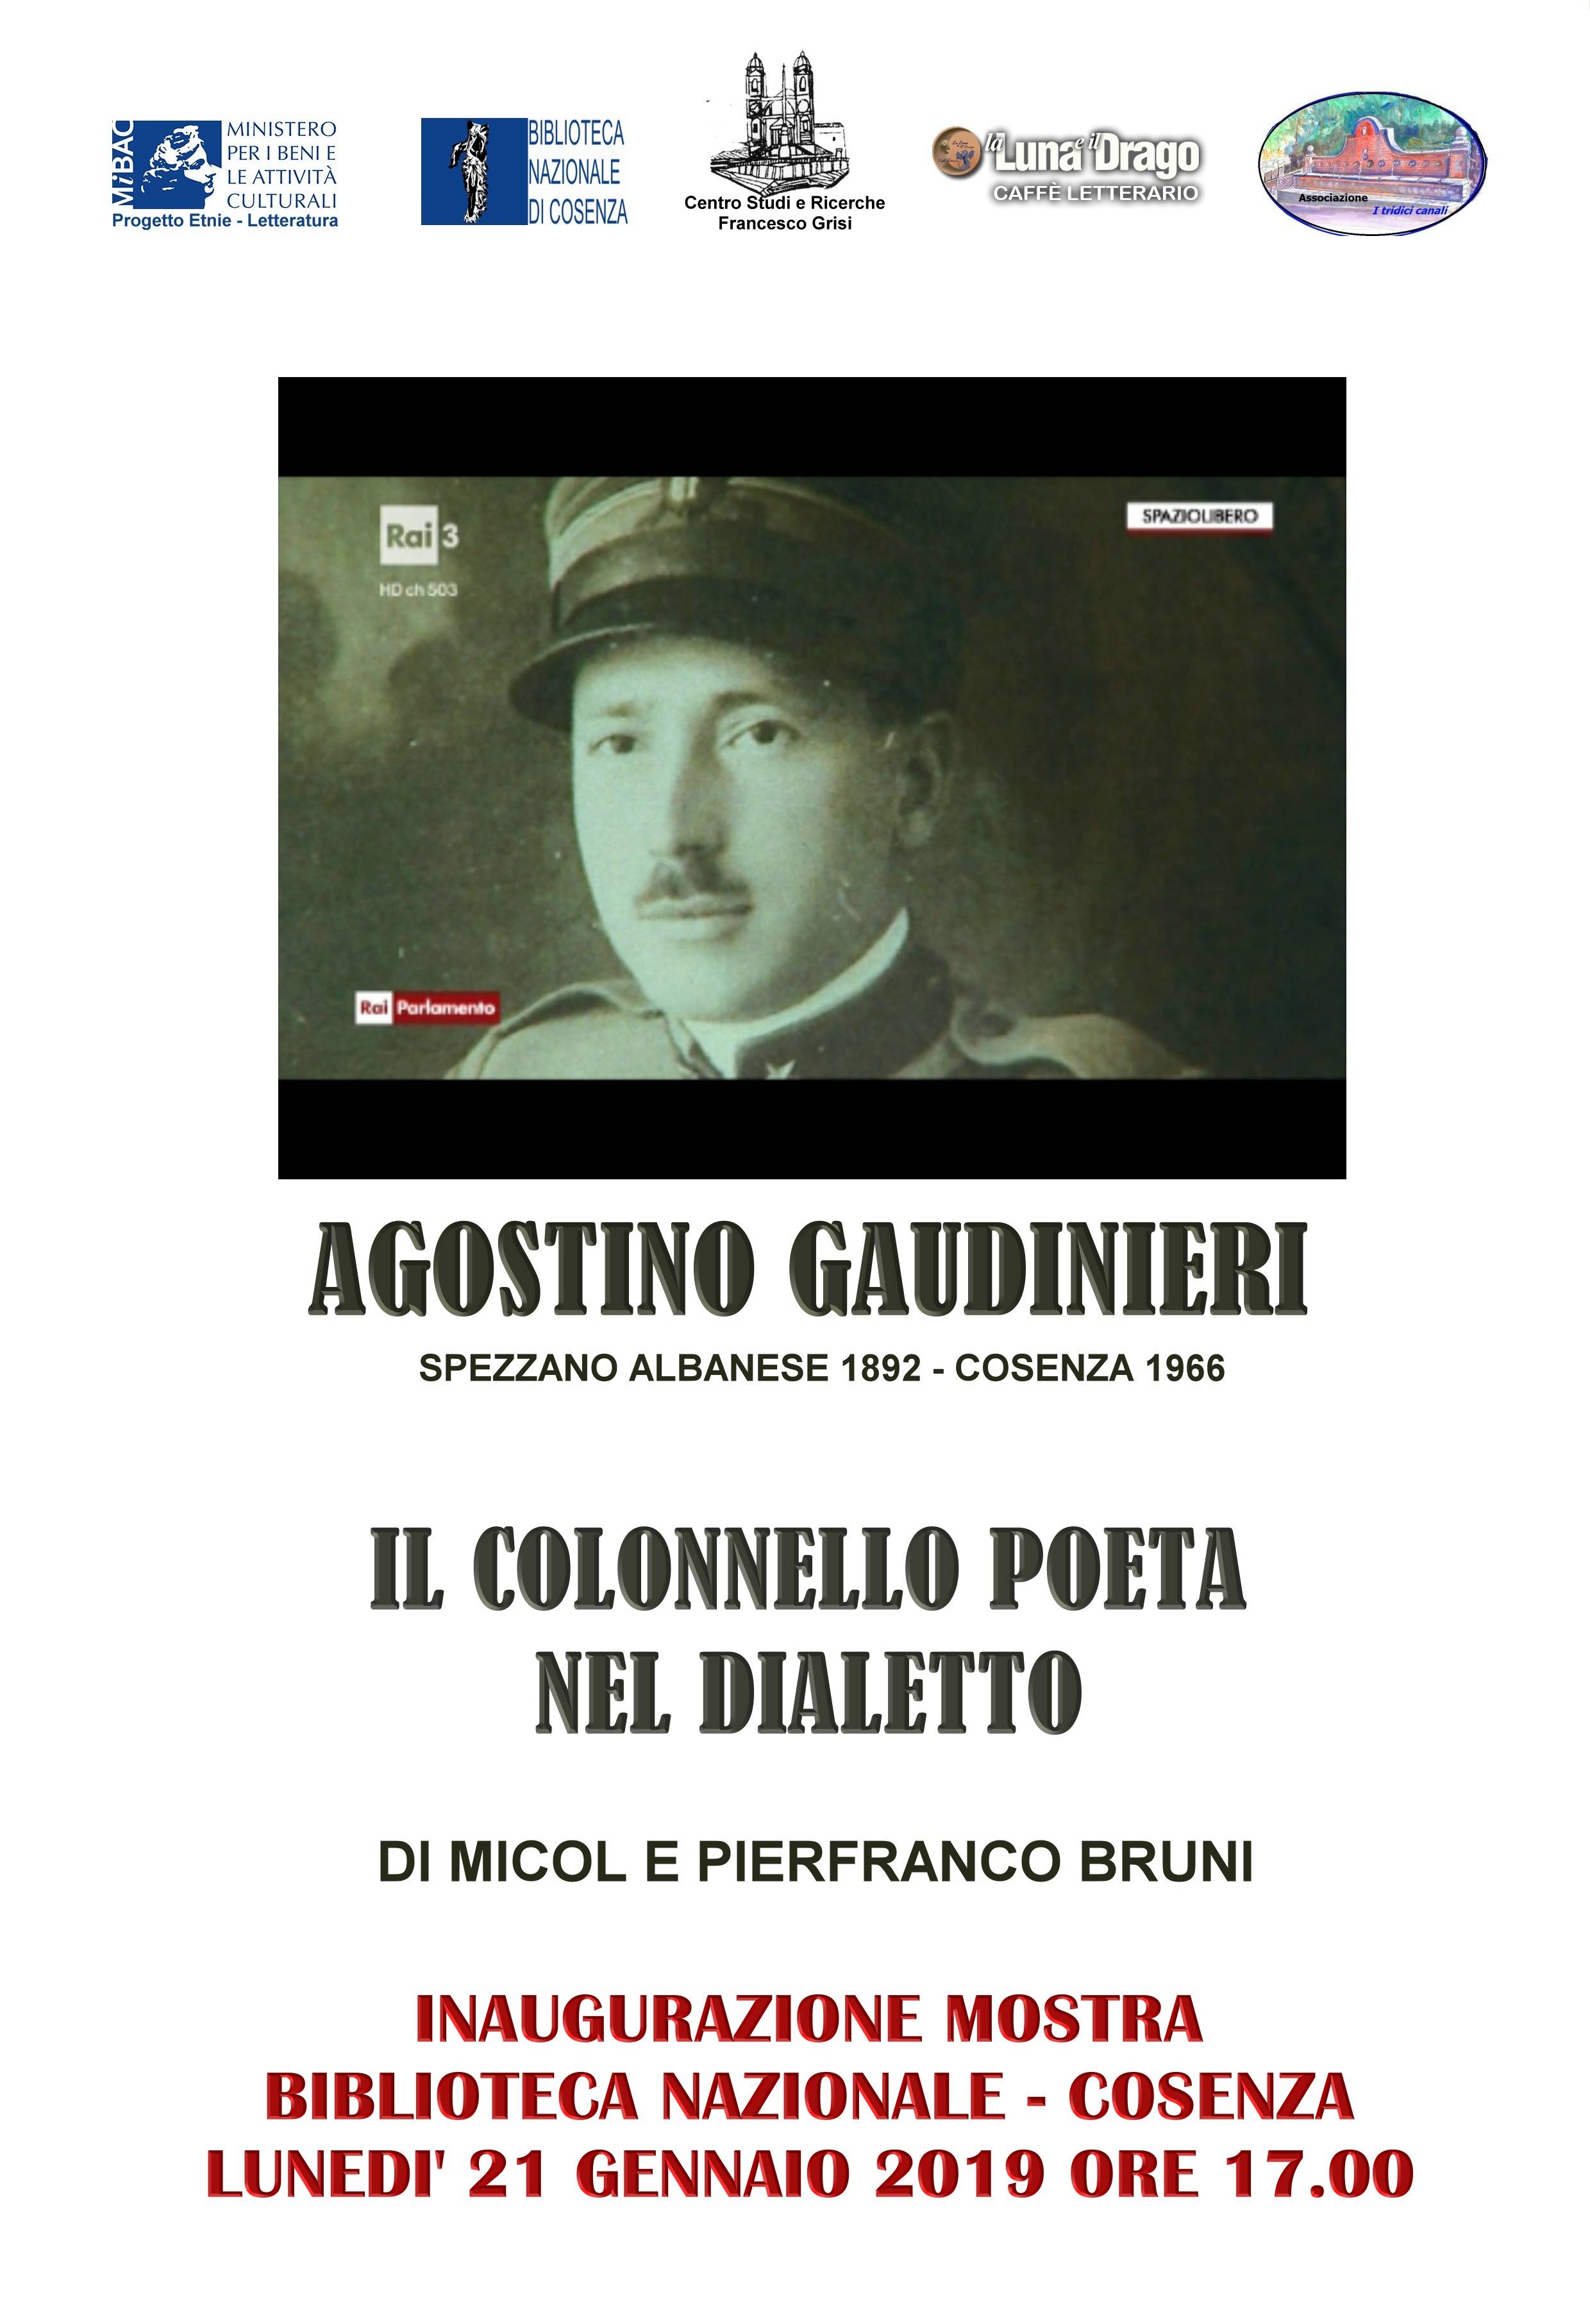 Cosenza. Lunedì 21 gennaio 2019 Inaugurazione della mostra sulla poesia dialettale di Agostino Gaudinieri alla Biblioteca Nazionale di Cosenza 